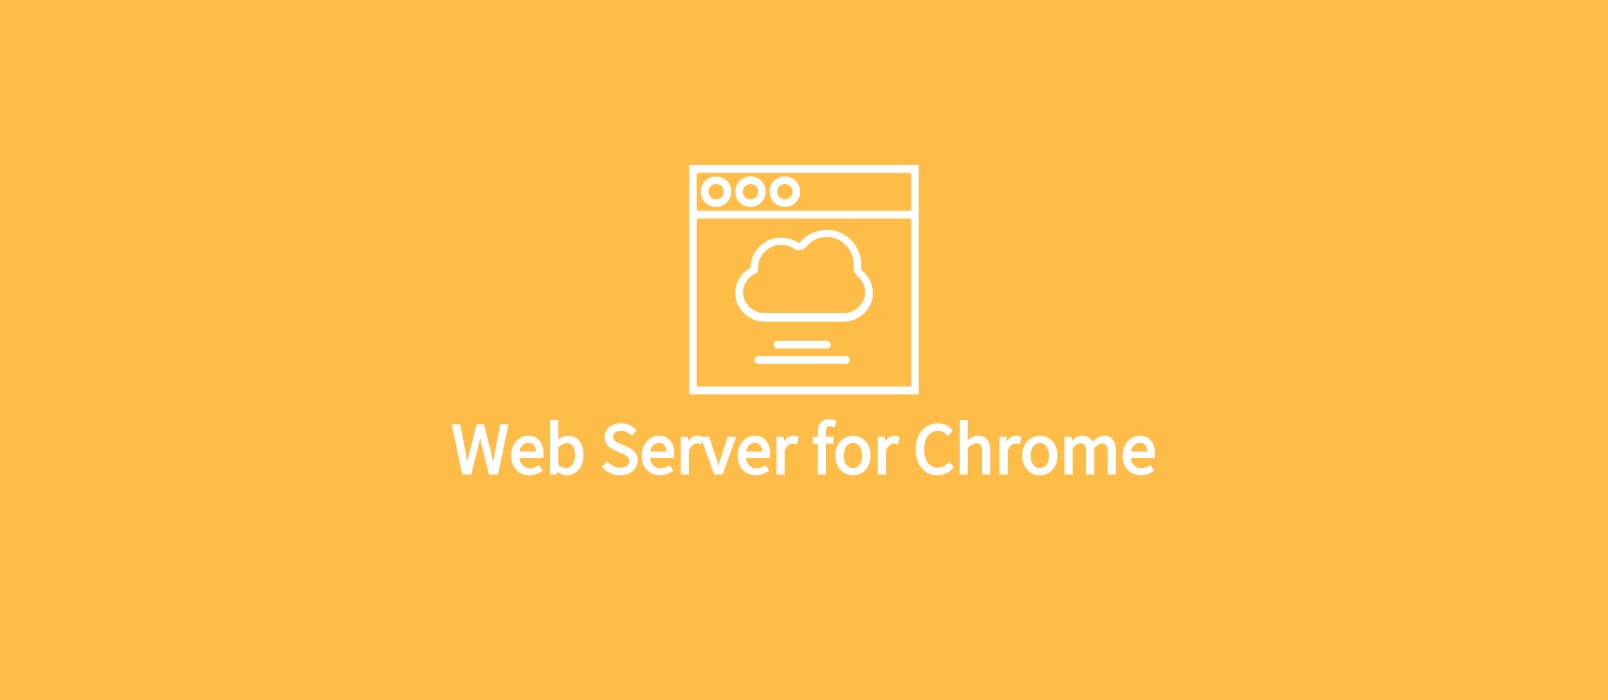 Web Server for Chrome - 用 Chrome 充当临时 HTTP 服务器 1